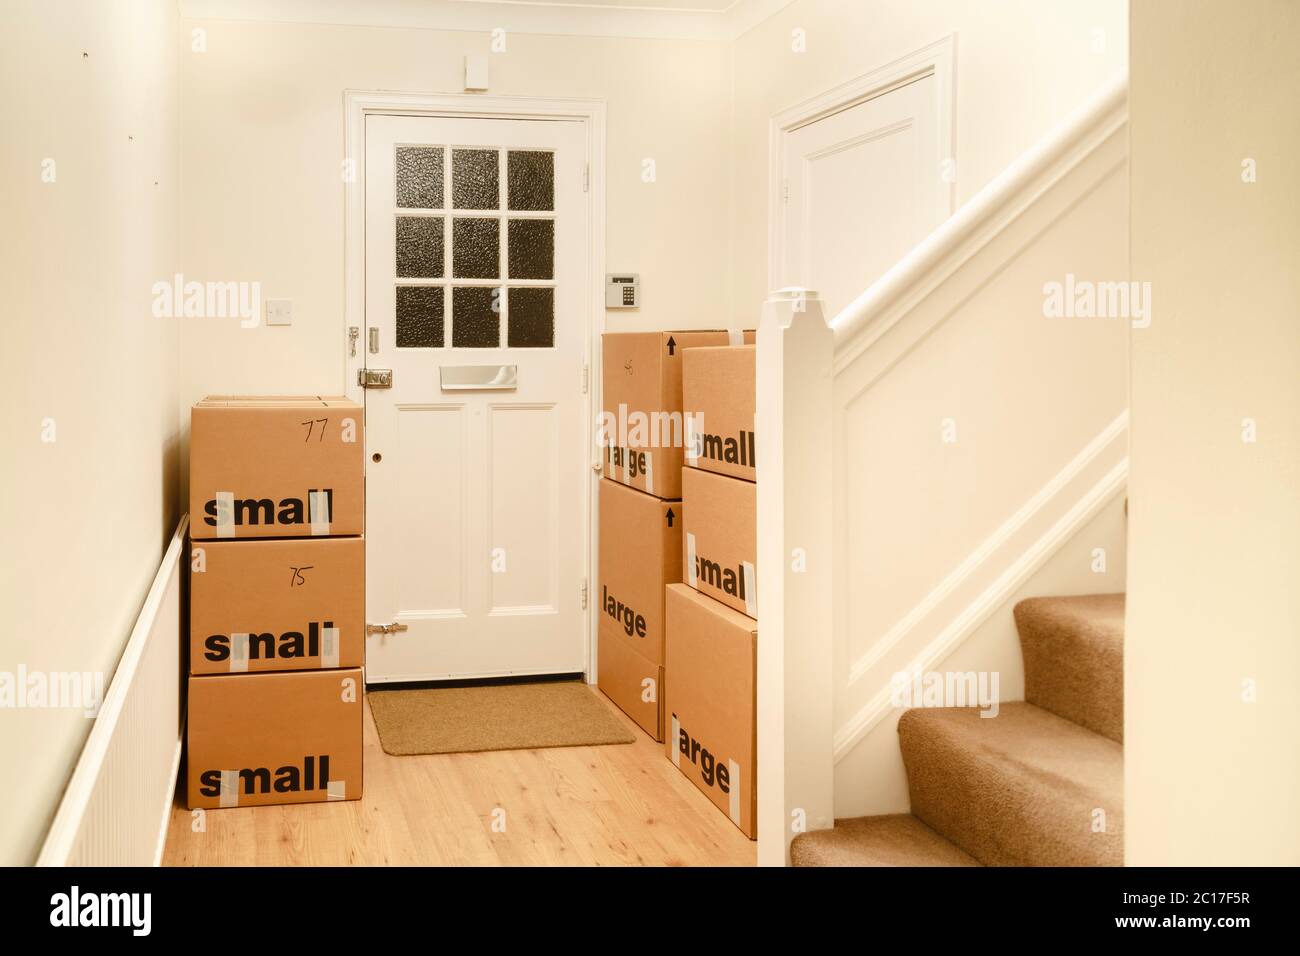 Pile de cartons d'emballage, déménagement de la maison, déménagement dans une nouvelle maison, Royaume-Uni Banque D'Images